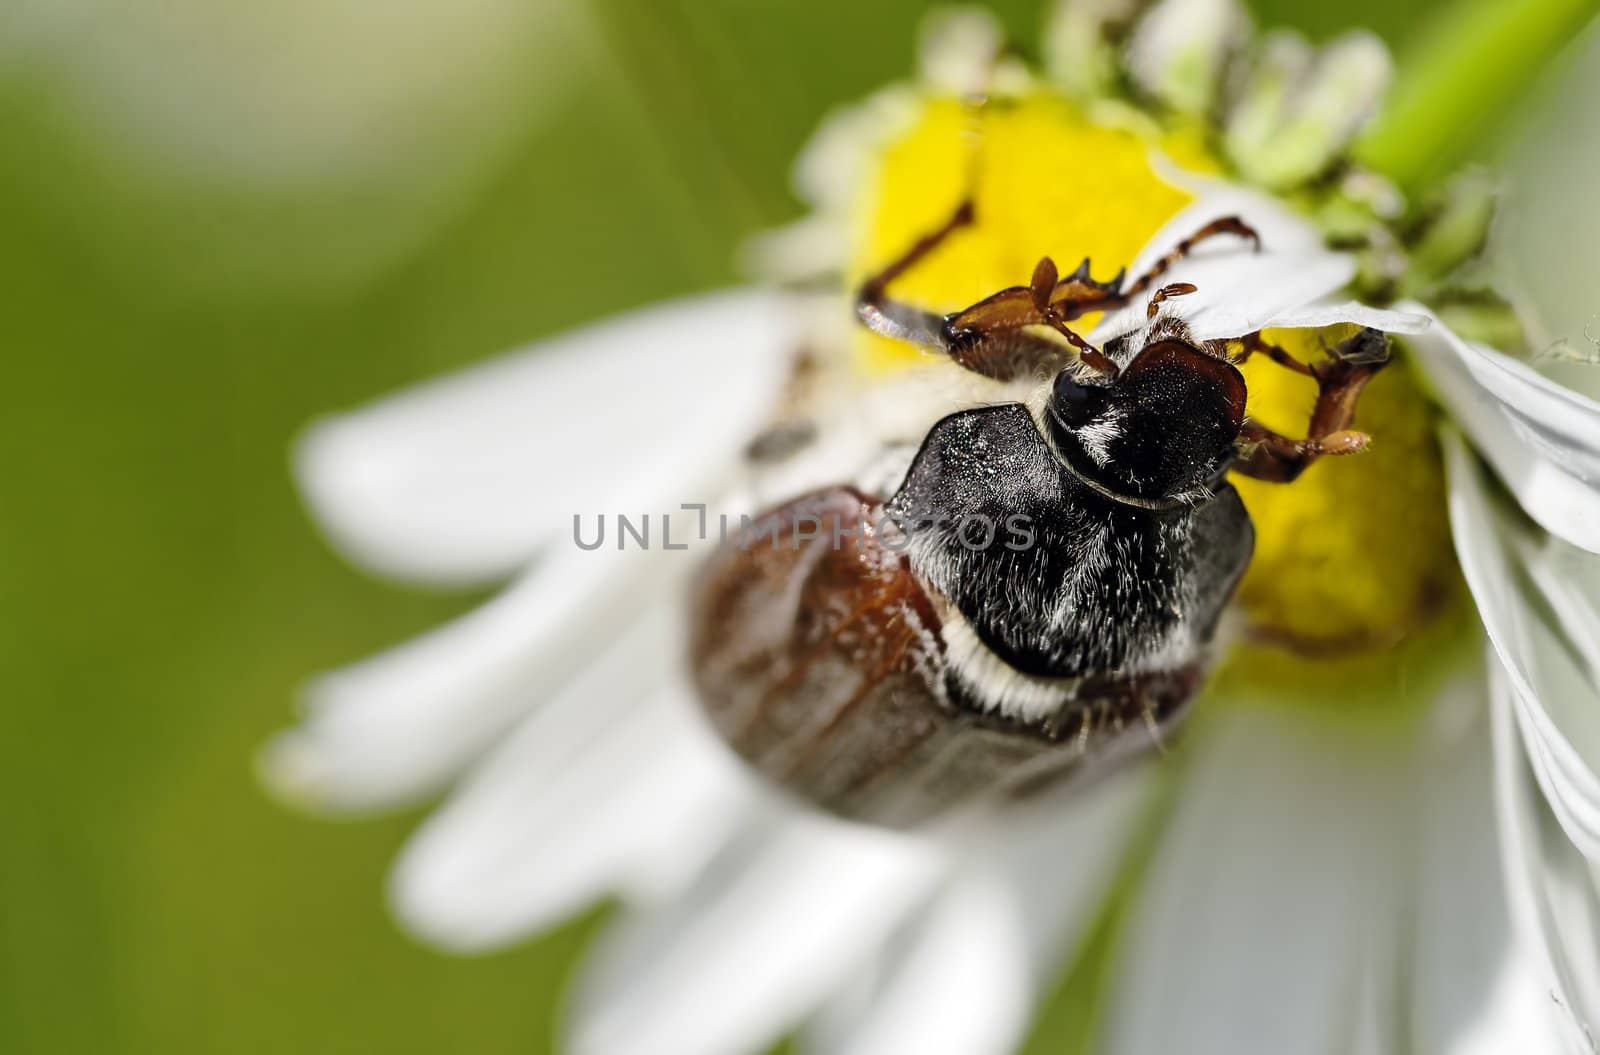 a may beetle closeup